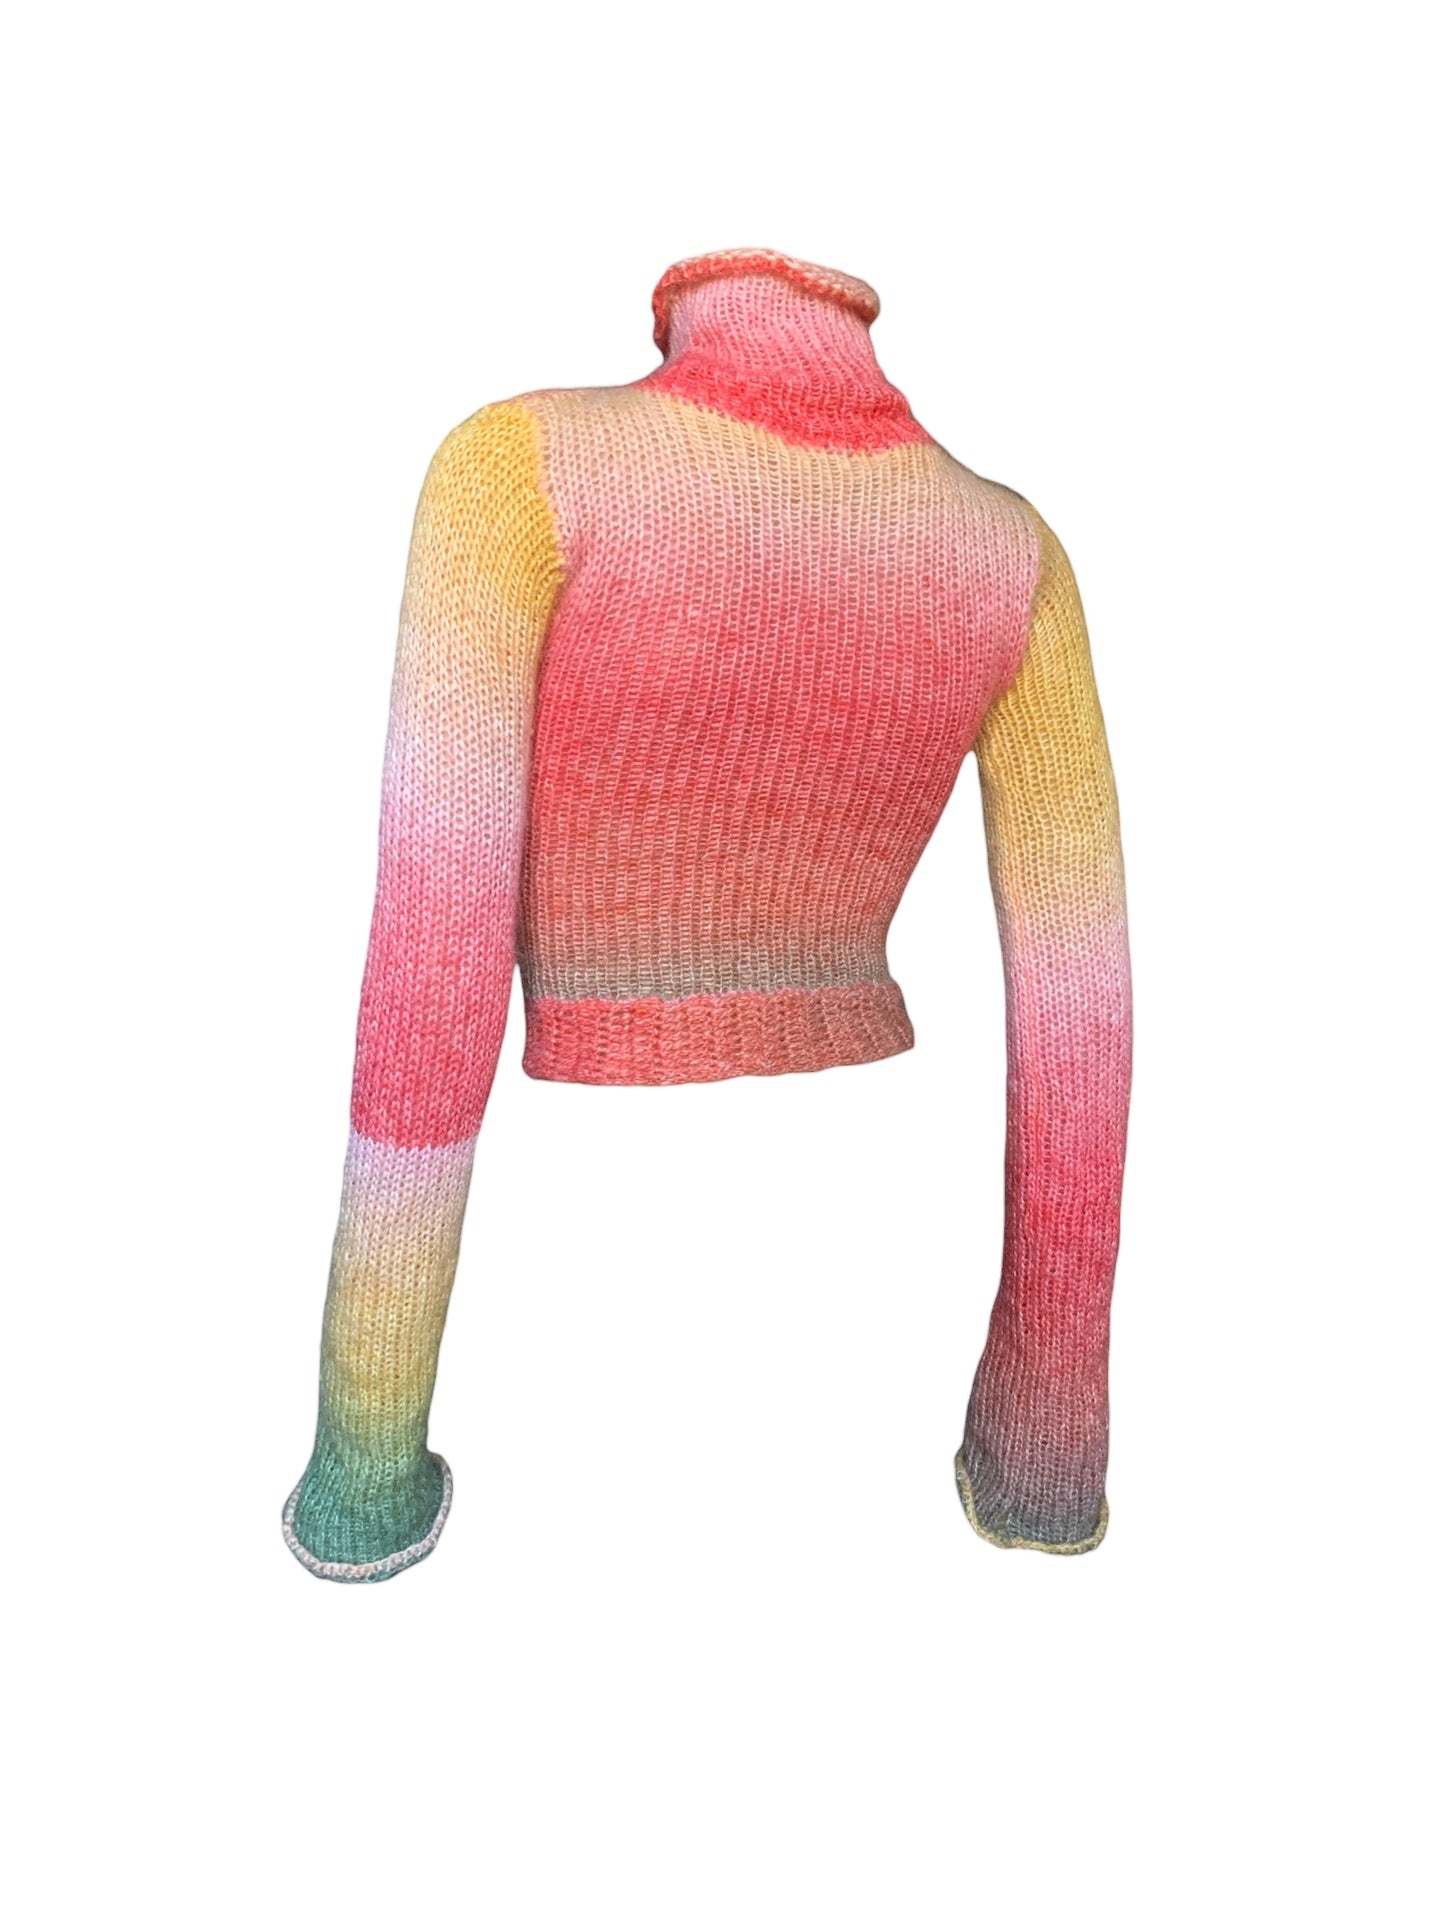 Mohair Knitted x Crochet Sweater